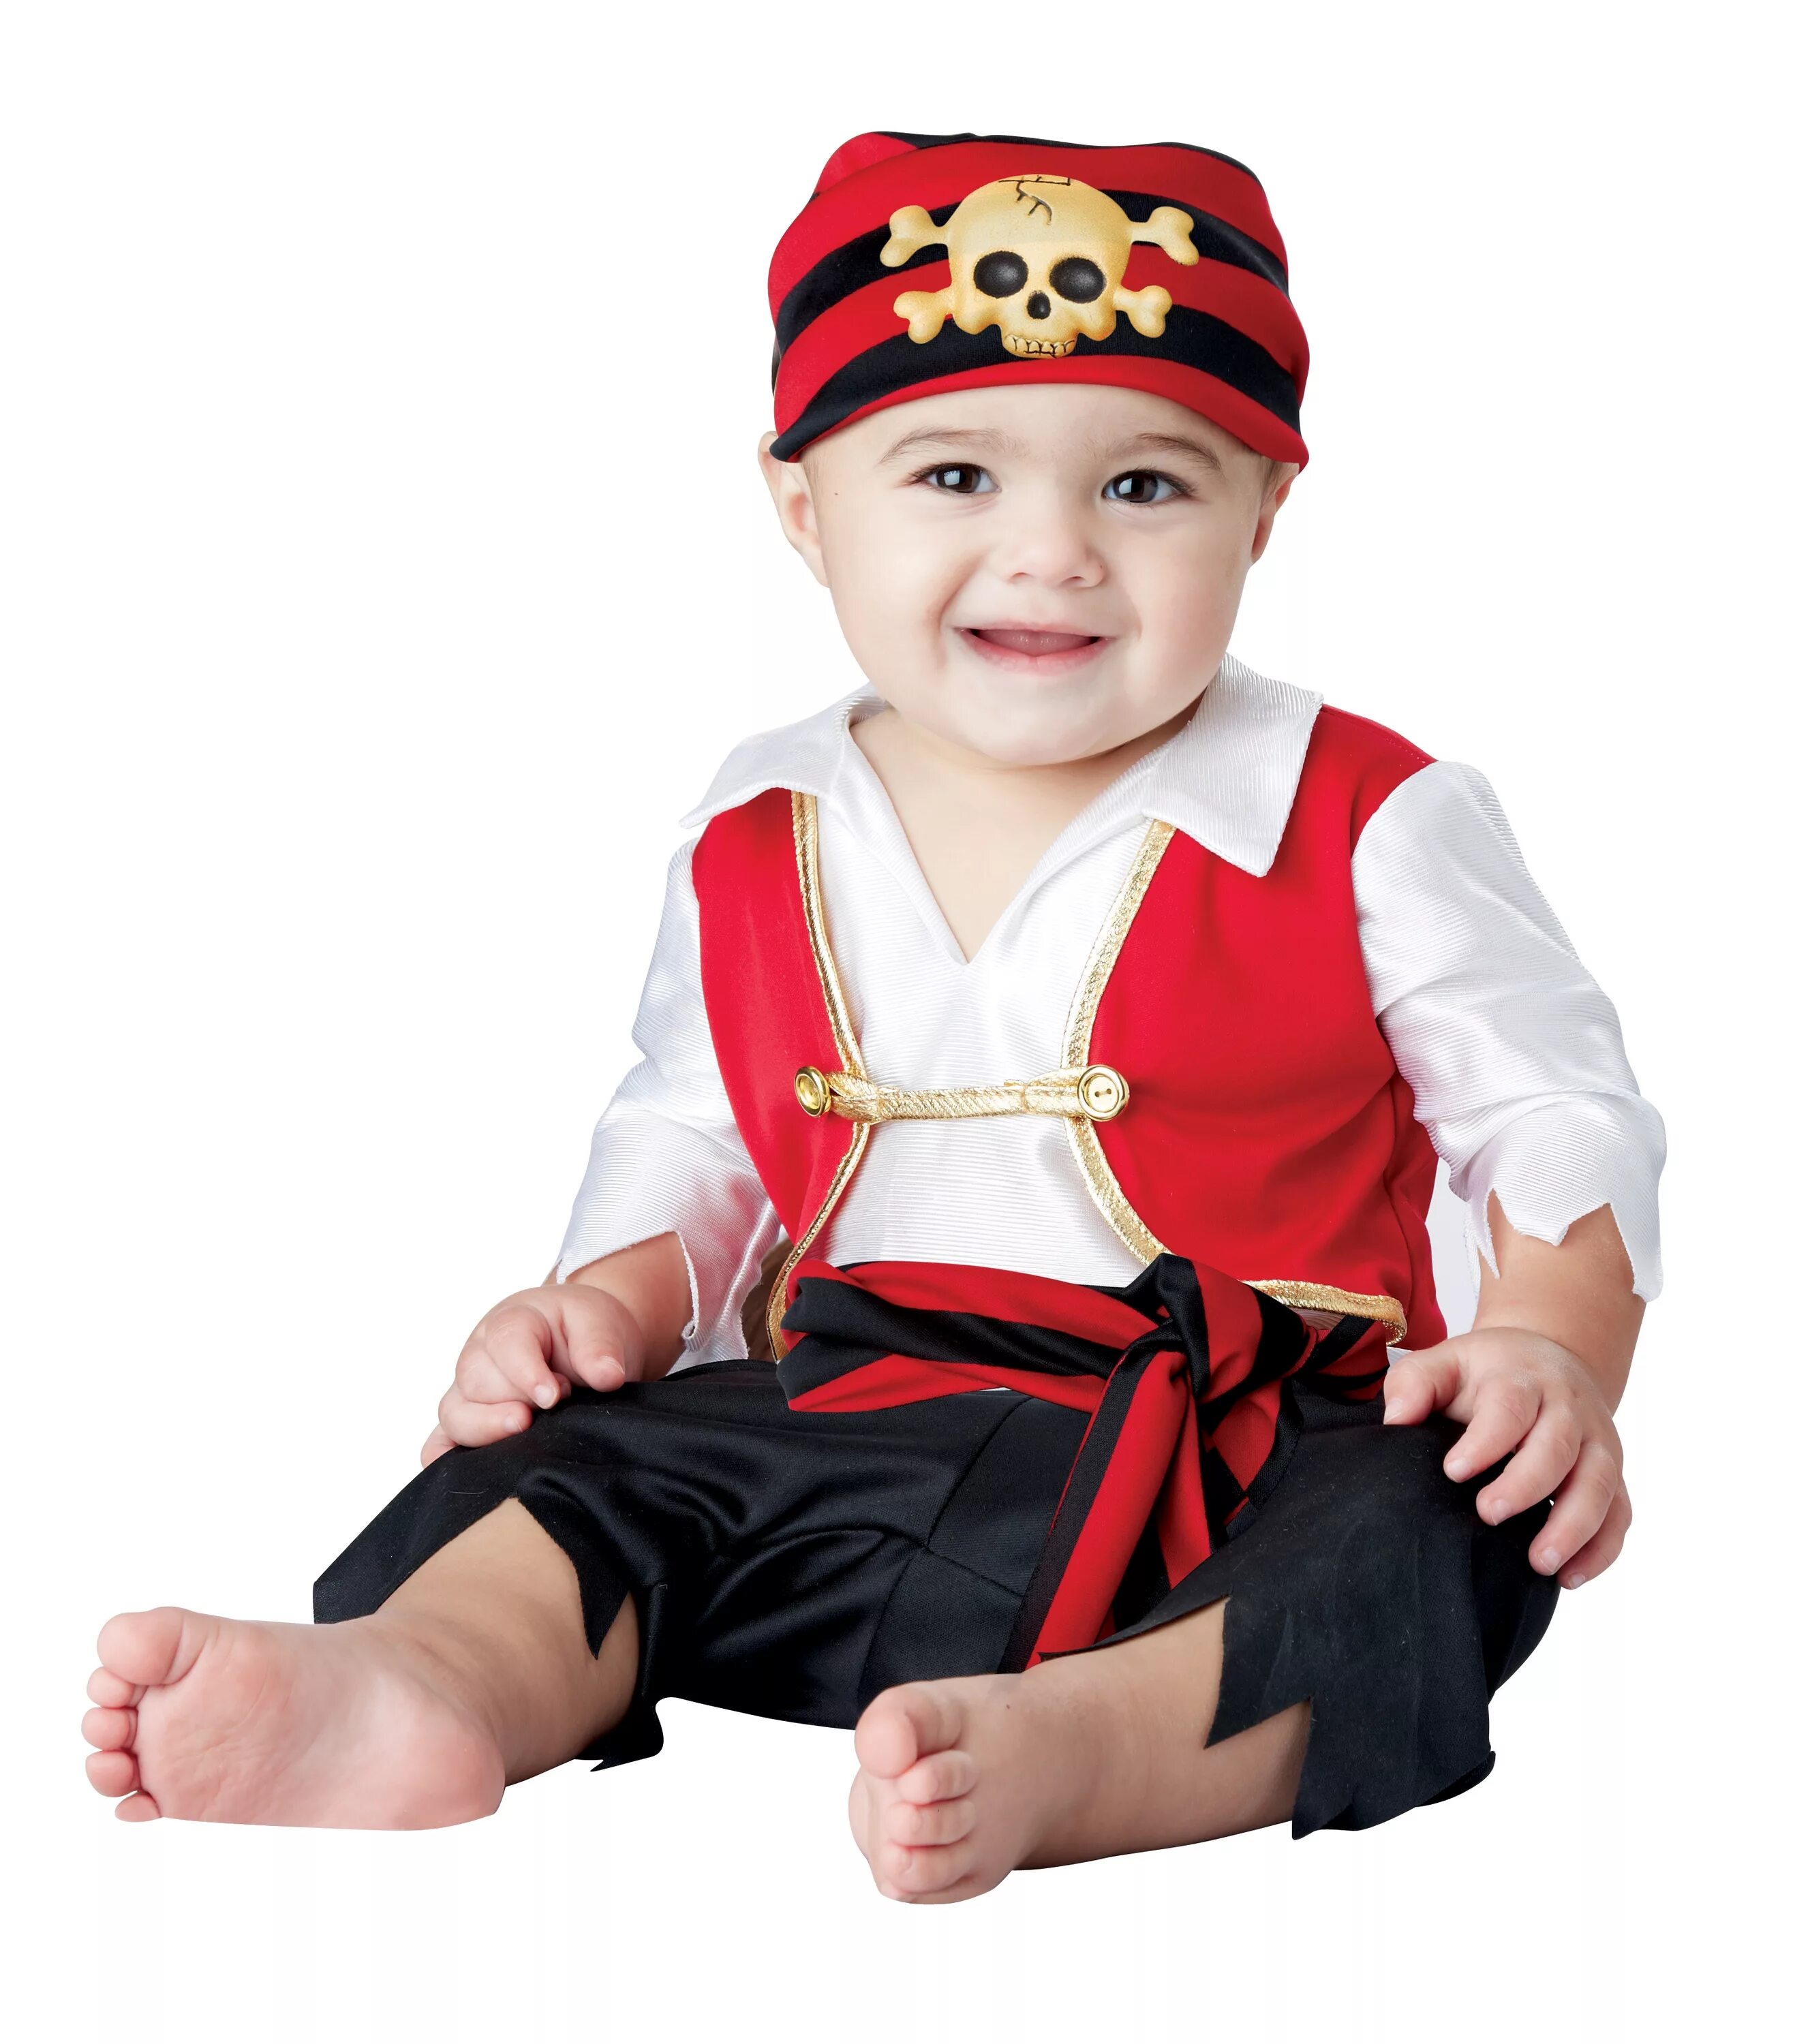 Нового костюмы для детей. Новогодний костюм для мальчика. Костюм пирата для детей. Дети в костюмах. Новогодние костюмы для самых маленьких.